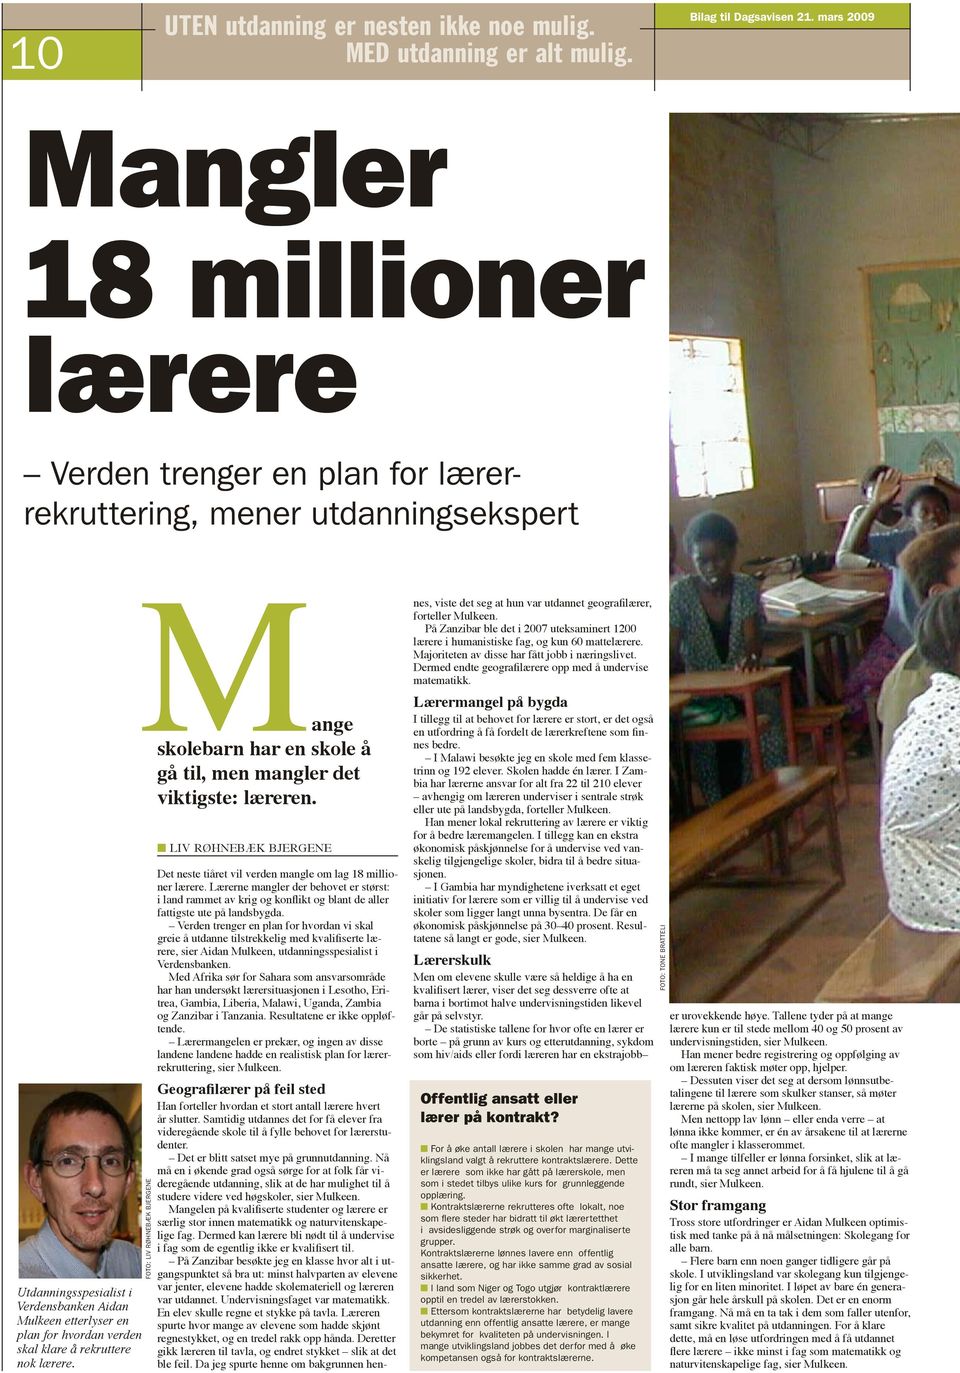 Foto: Liv Røhnebæk Bjergene n Liv Røhnebæk Bjergene Det neste tiåret vil verden mangle om lag 18 millioner lærere.